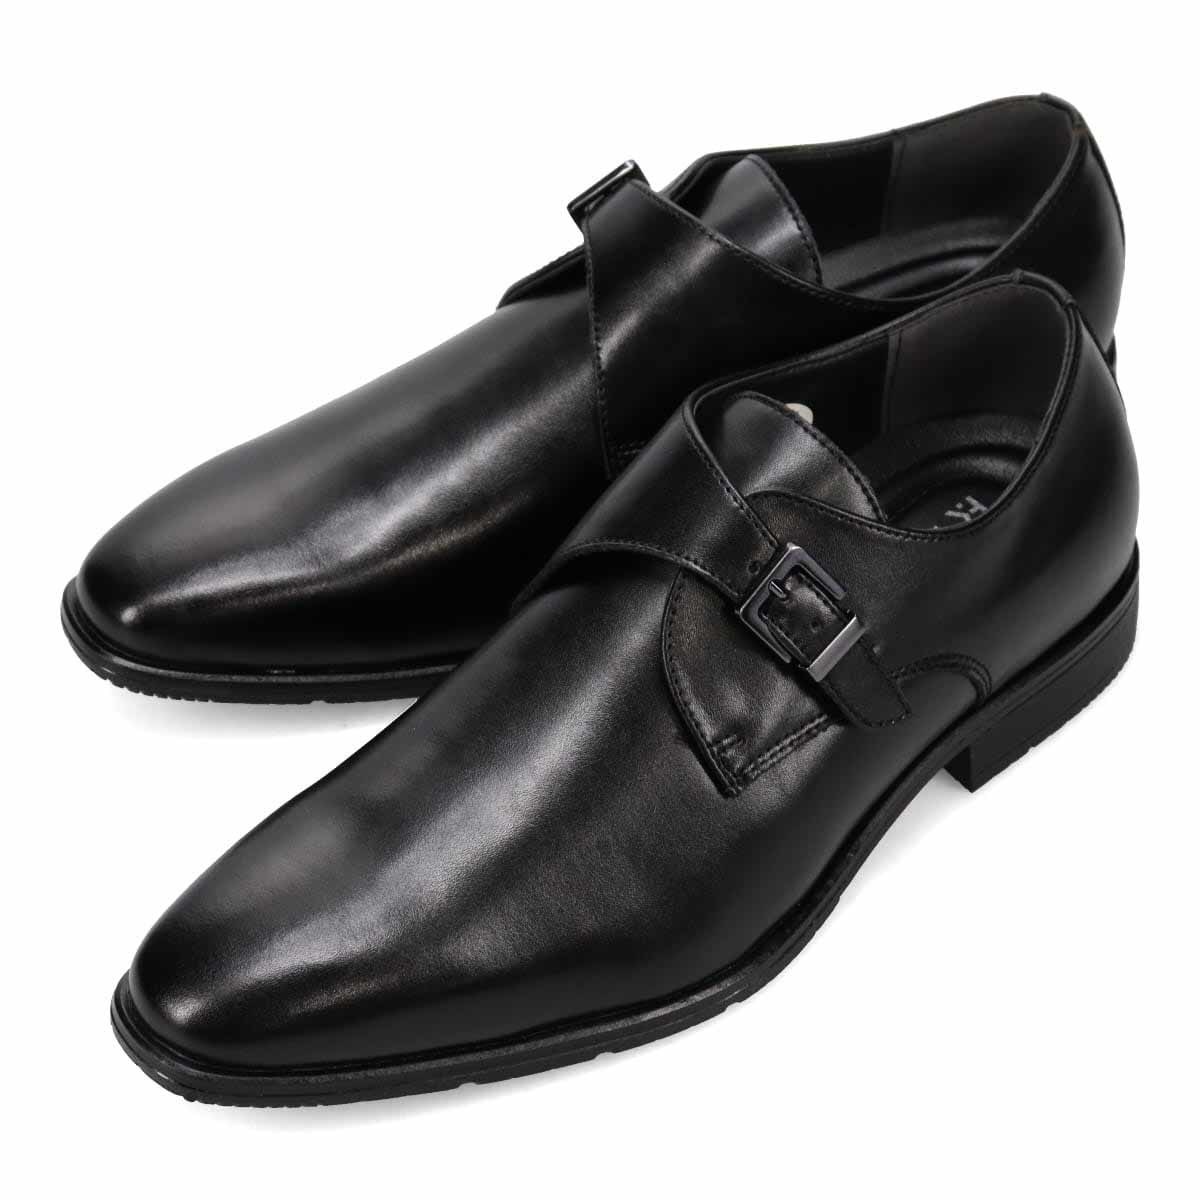 ▲ヒロコ コシノ モンクストラップビジネスシューズ HR7003 本革 メンズ 紳士靴 革靴 ブラック Black 黒 26.5cm (0910010694-bk-s265)